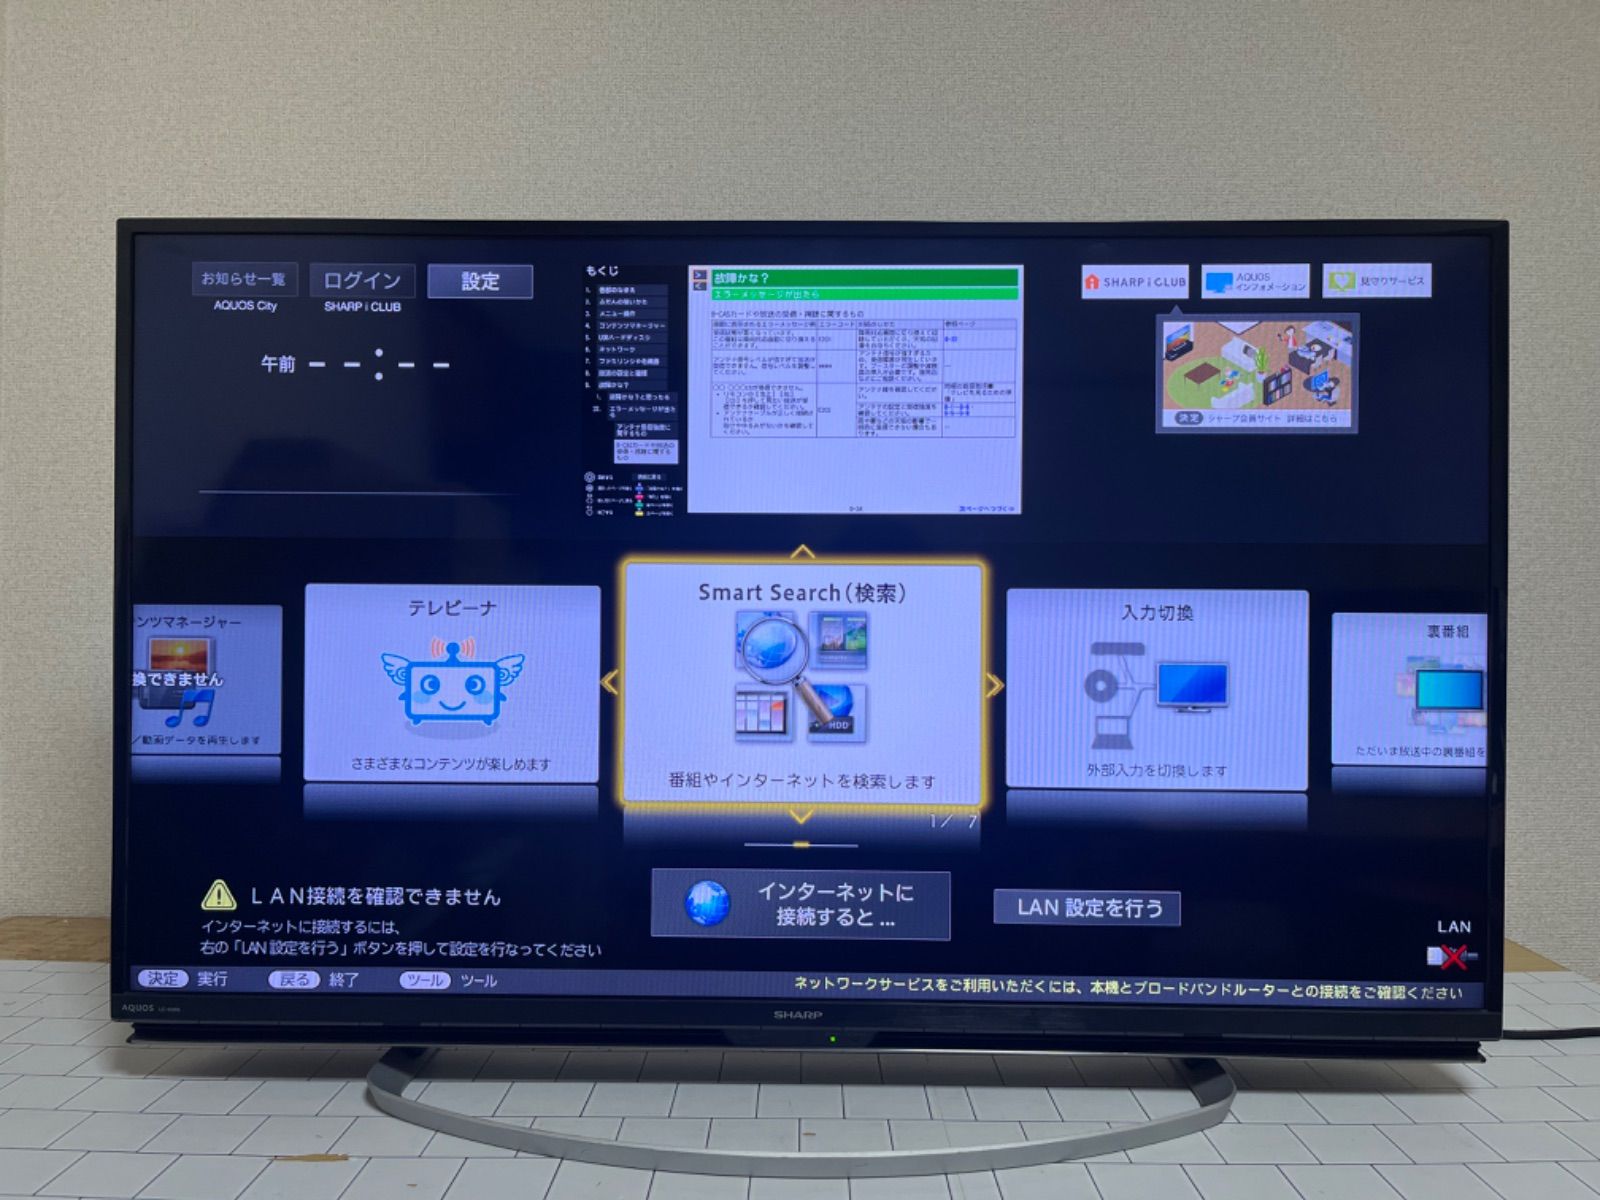 SHARP AQUOS LC-40W5 2018年式 - テレビ